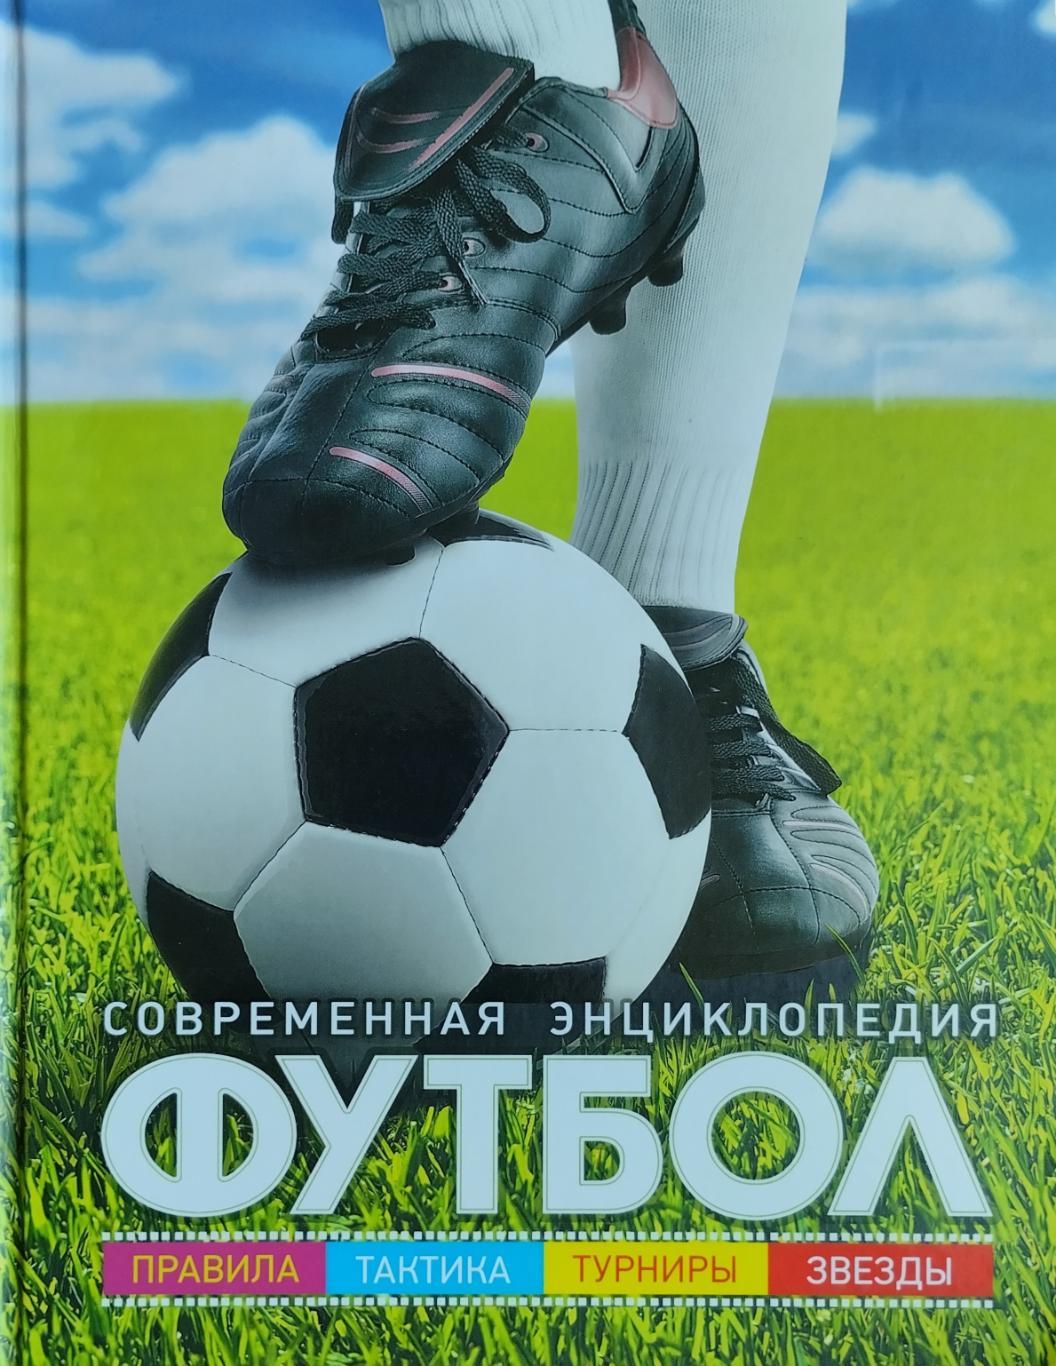 Футбол: Современная энциклопедия. 2016. 96 стр.